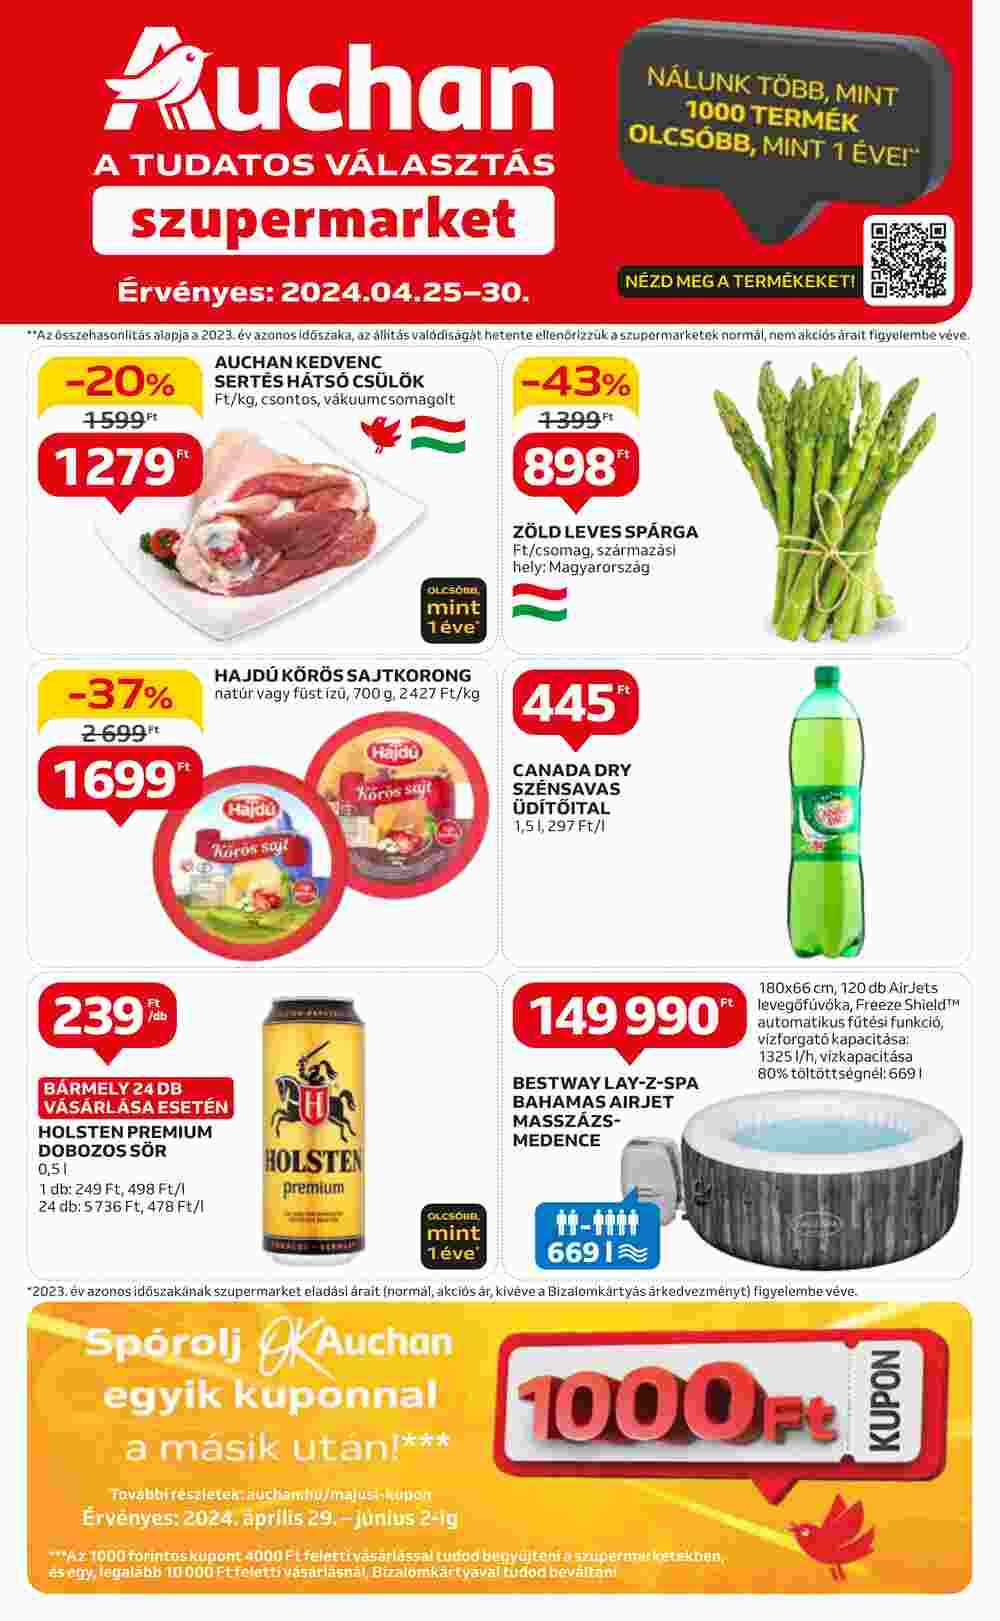 Auchan akciós újság 2024.04.25-től - 1. oldal.